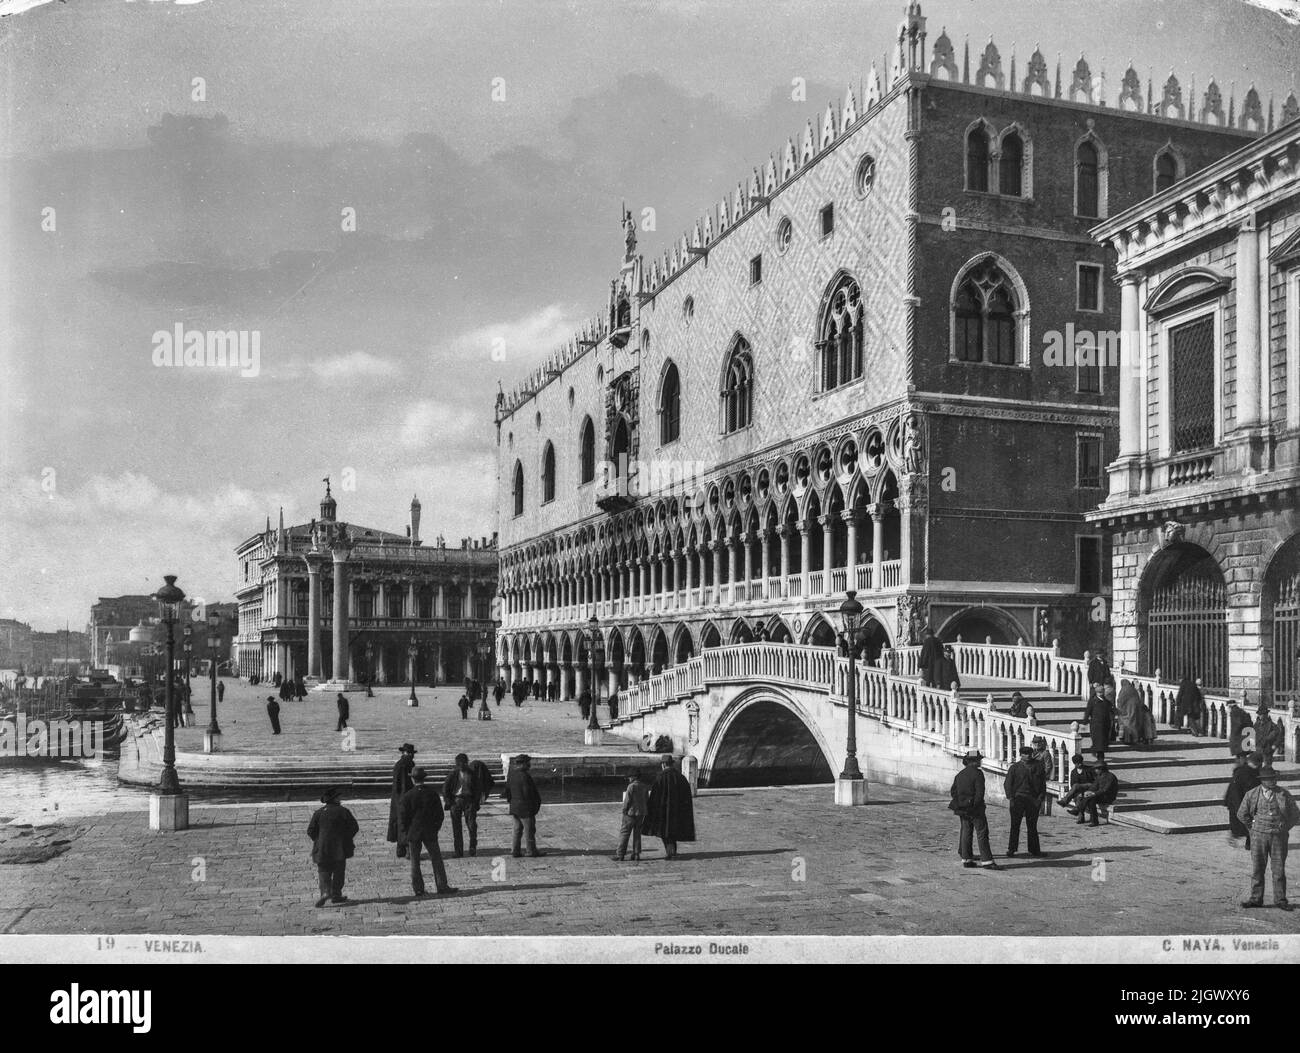 Blick auf den Ducale Palast von Carlo Naya zwischen 1868 und 1882. Das historische Archiv von Naya-Bohm ist ein Archiv von 25000 Glasplatten, die jetzt digitalisiert wurden, von Bildern Venedigs von 1868 bis 1882 (Carlo Naya) und dann bis 1950 (Bohm). Stockfoto